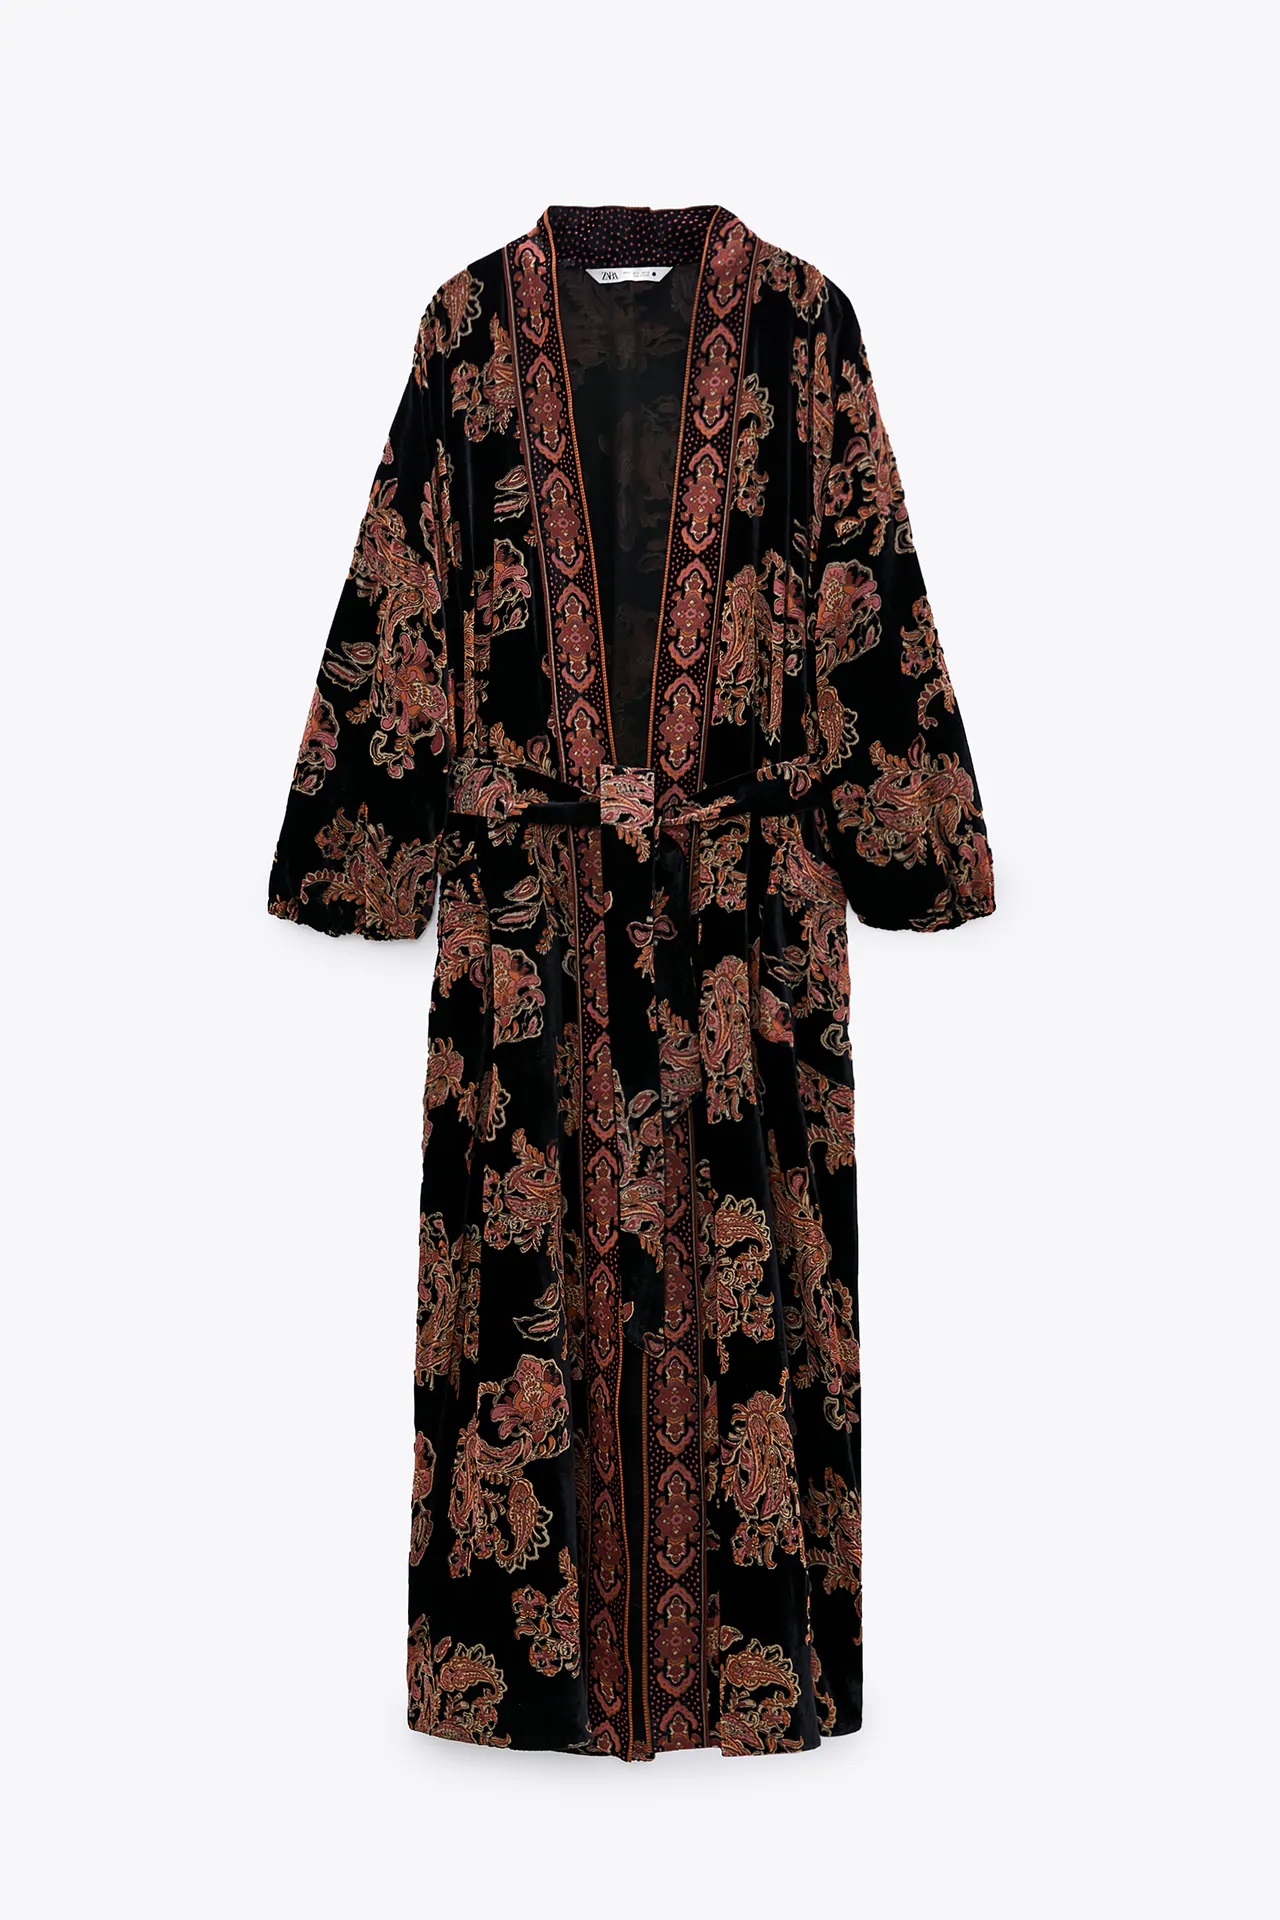 Este es el kimono de Zara más deseado estas Navidades 2020, a punto de agotarse